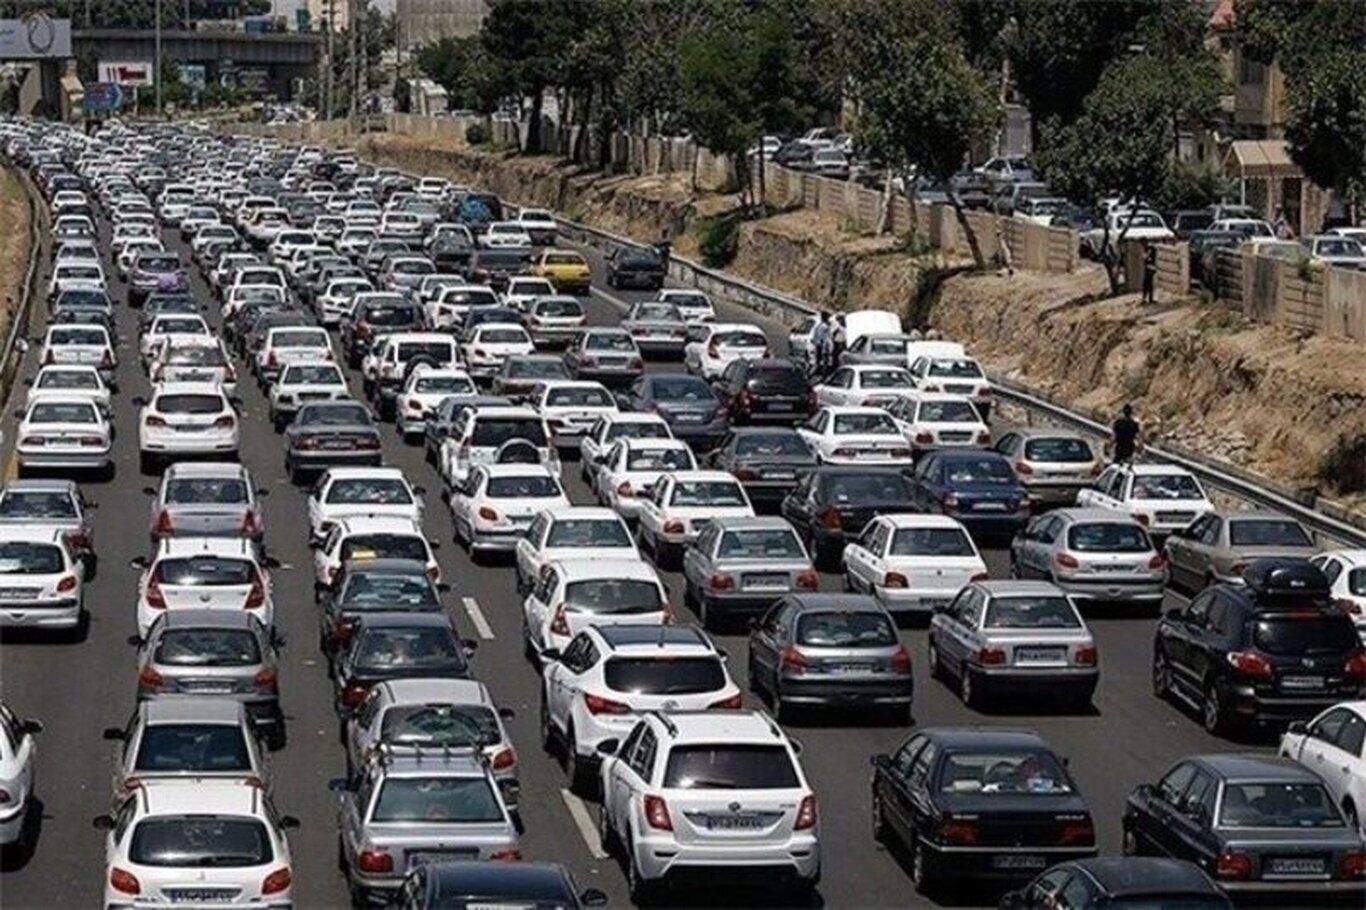 ترافیک سنگین در آزادراه کرج-قزوین/ رانندگان عجله نکنند